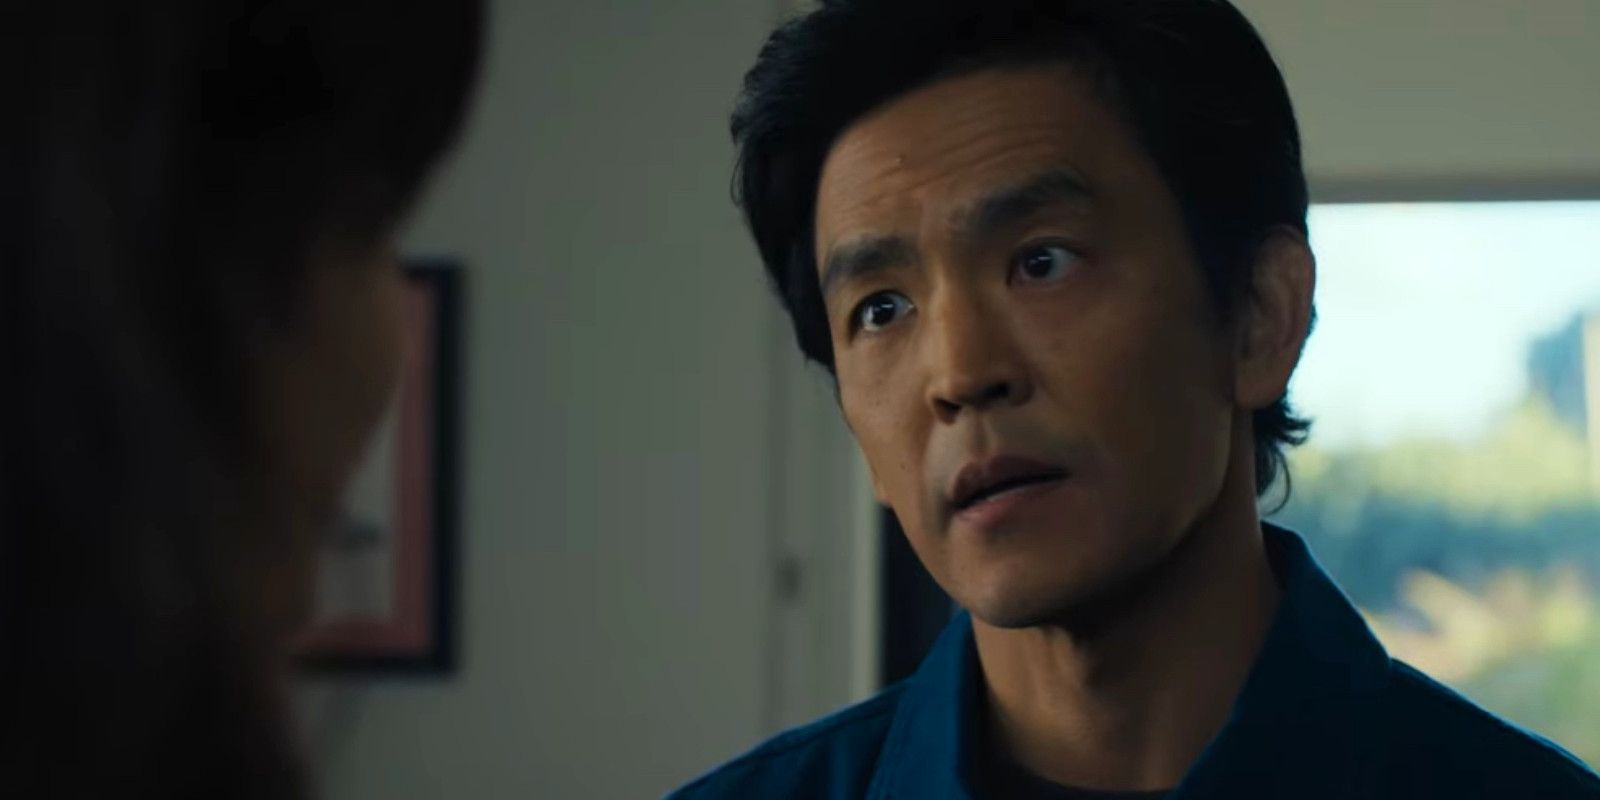 Tráiler de Afraid: La casa inteligente de John Cho se convierte en una entidad aterradora en una nueva película de ciencia ficción y terror